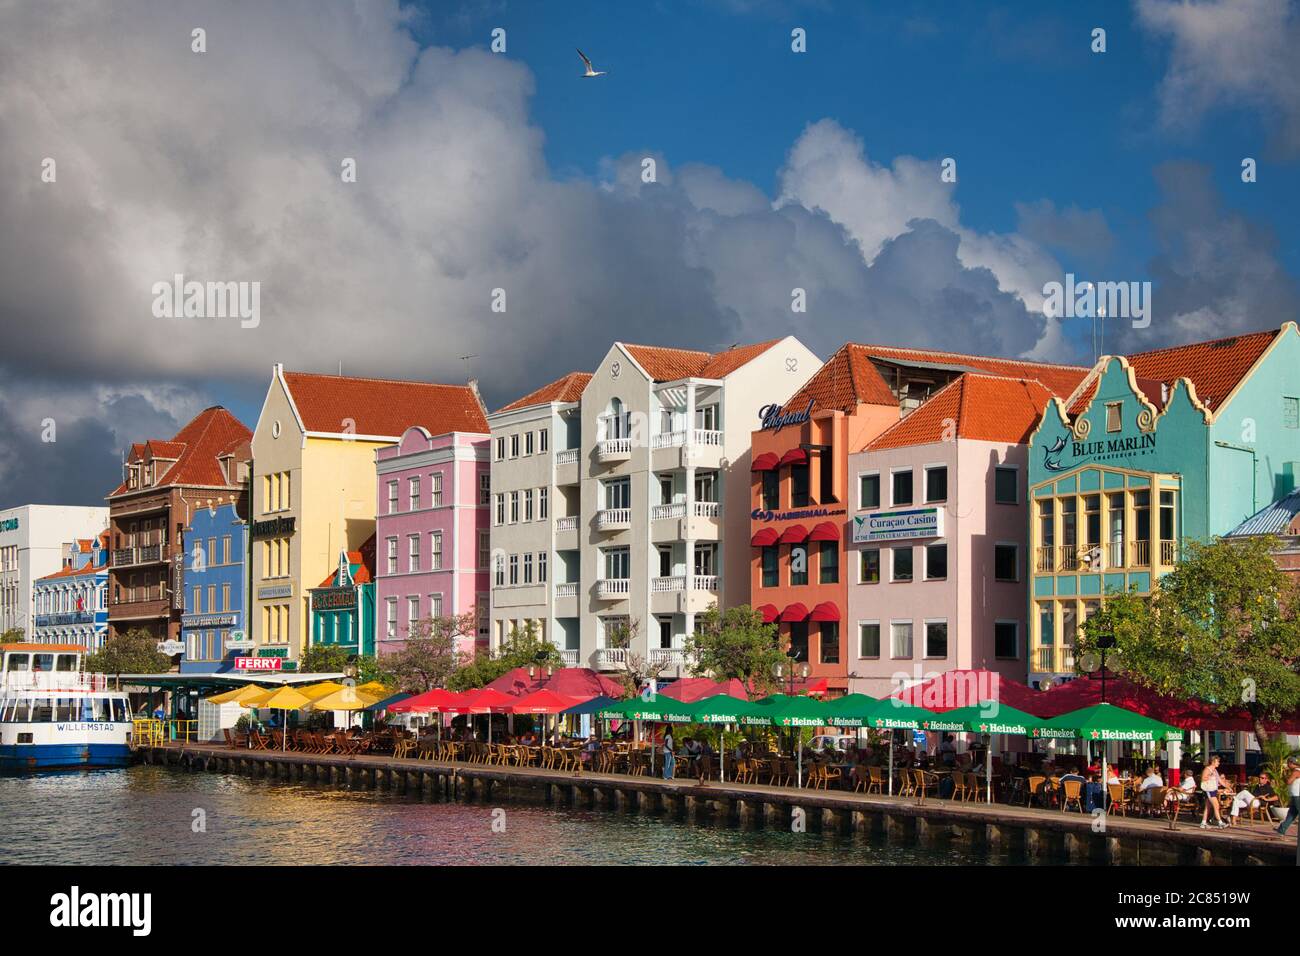 Architektur und Gebäude im holländischen Stil entlang der Küste mit überdachten Tischen zum Essen in Willemstad, Curacao, der Karibik, Westindien Stockfoto